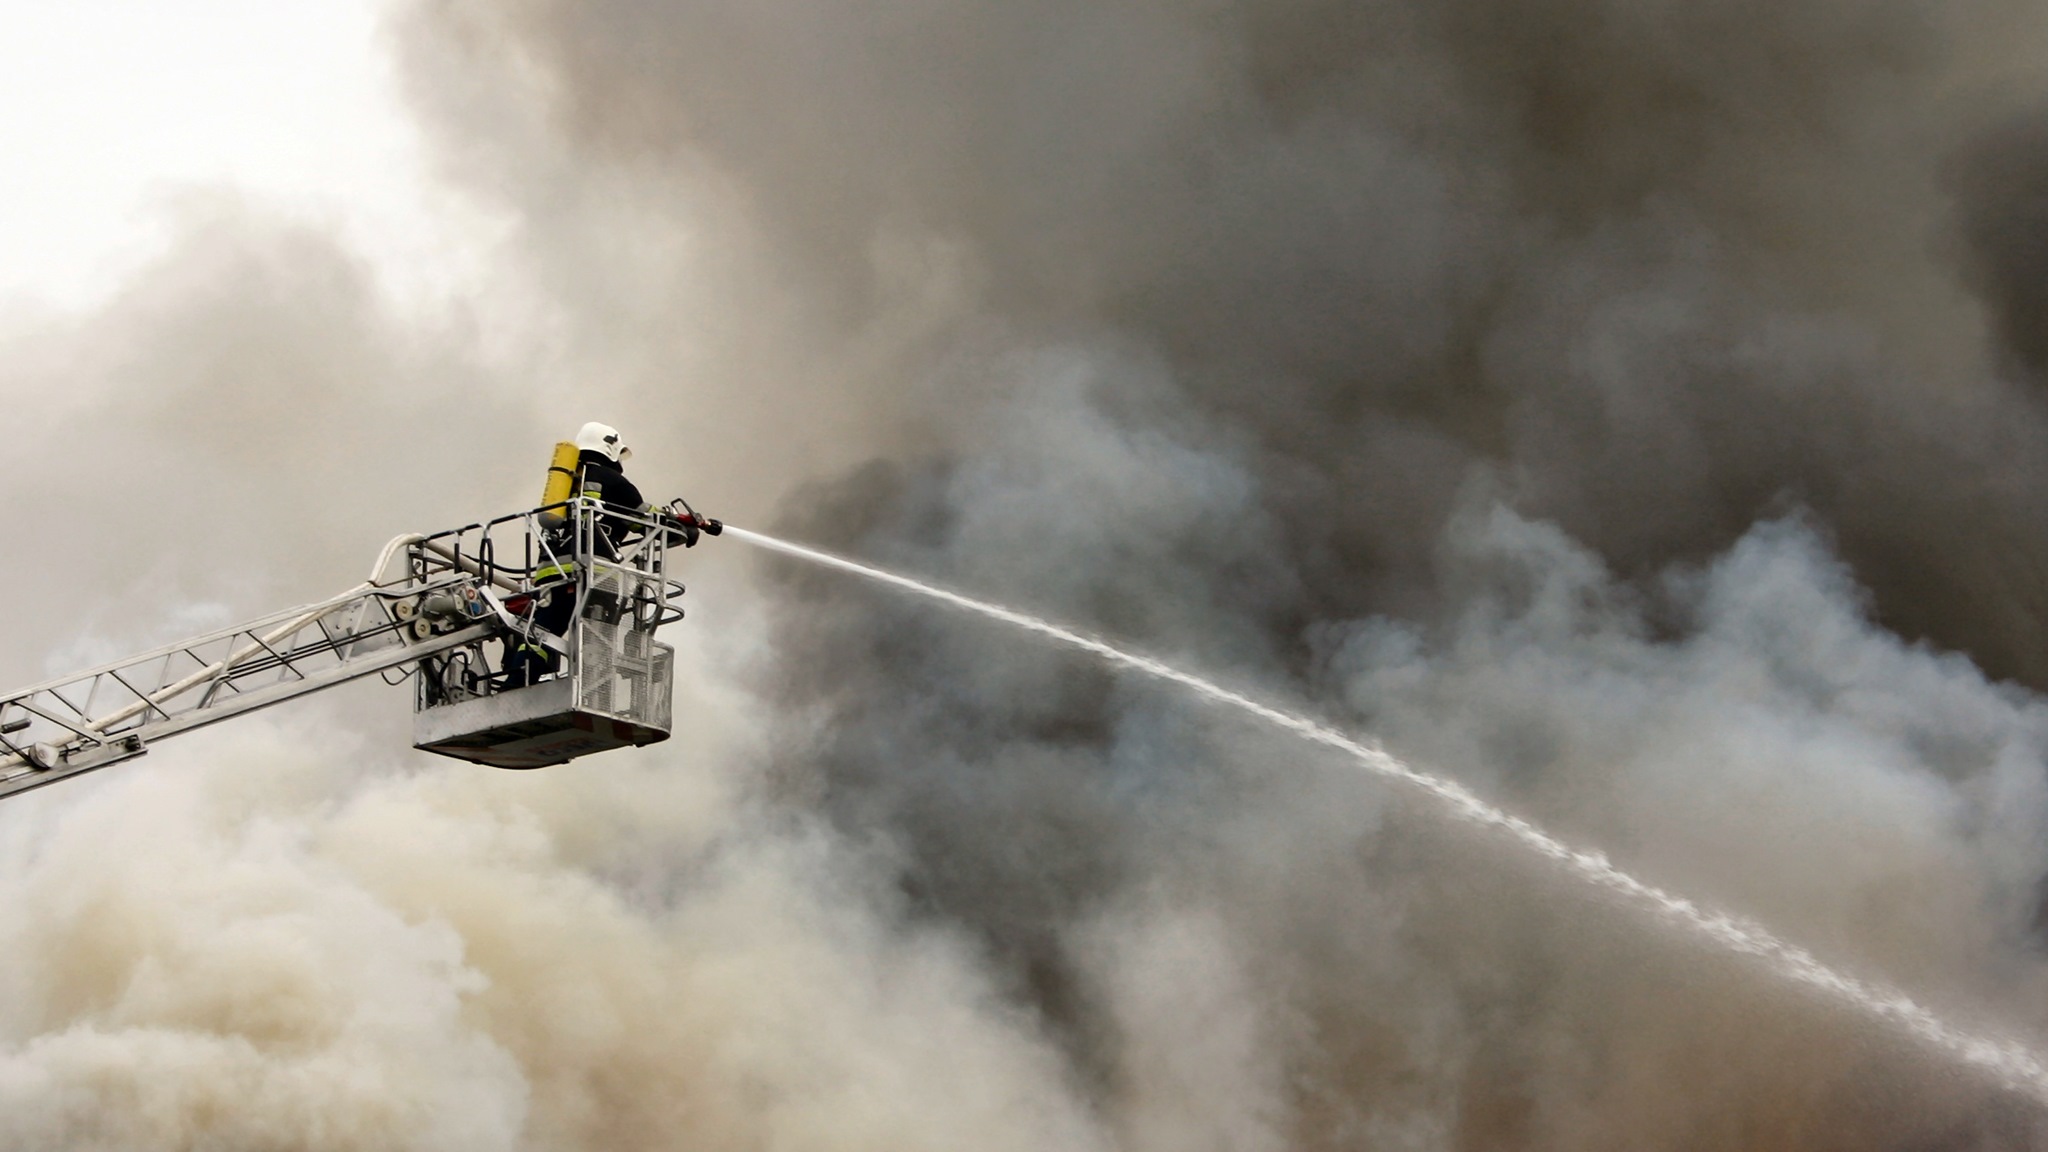 Pożarze chlewni koło Bielska Podlaskiego - spłonęło 1600 prosiaków